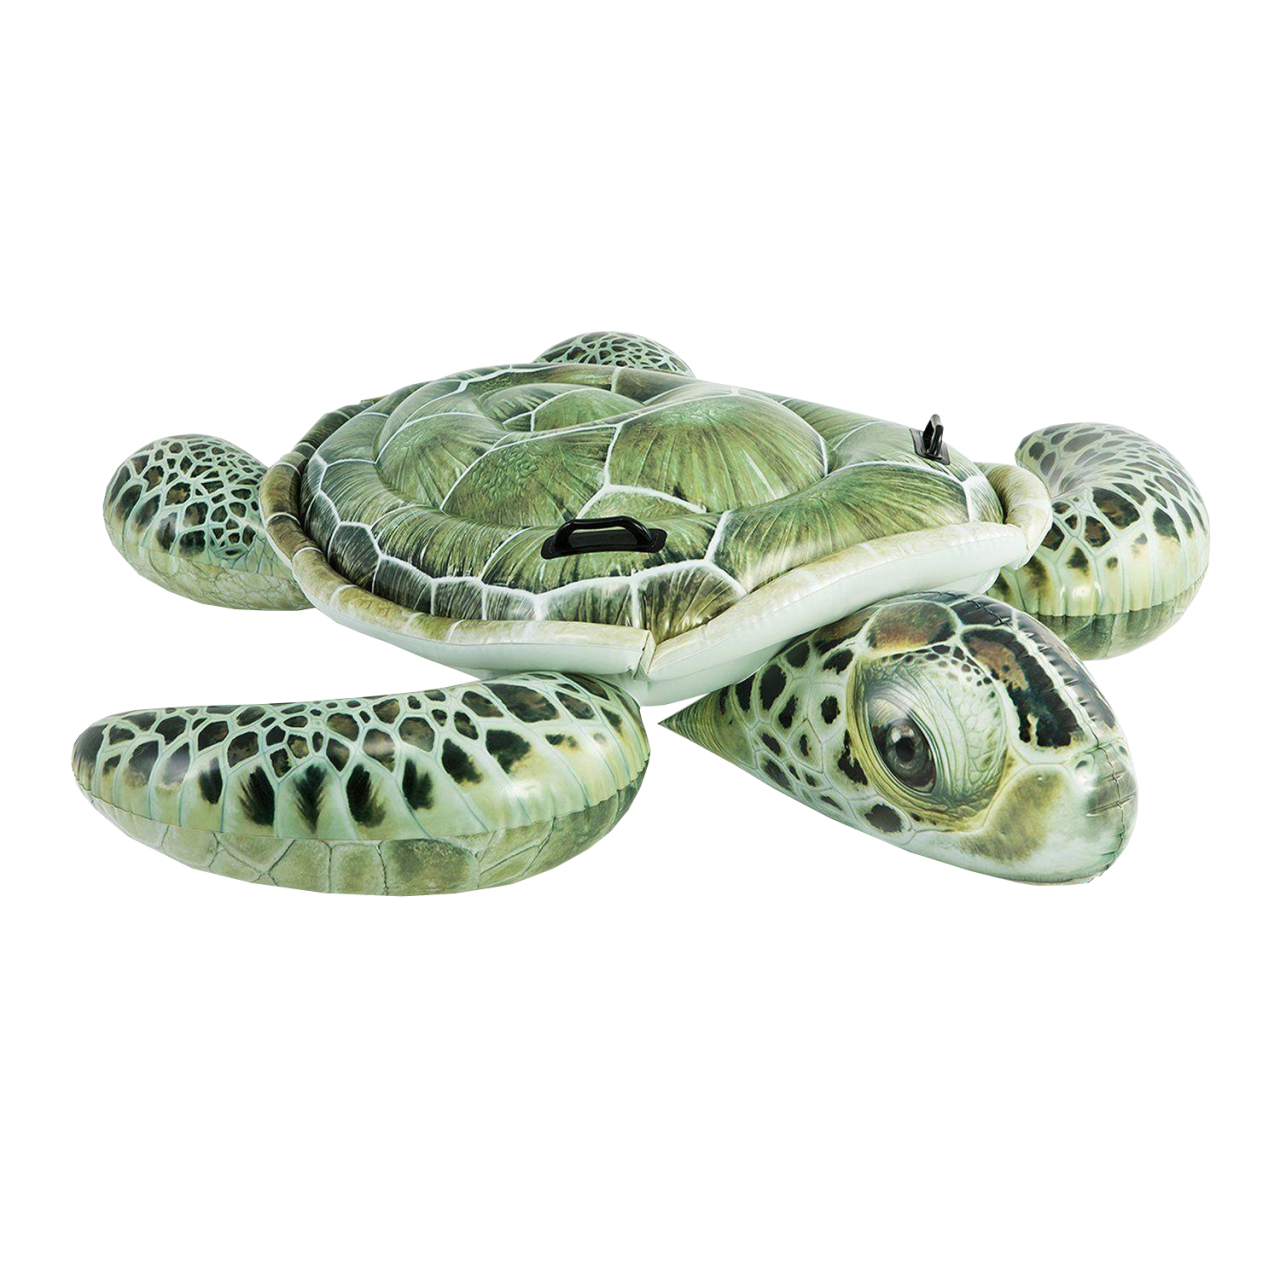 Intex Schwimmtier Schildkröte Luftmatratze 190 x170cm Reittier aufblasbar 57555